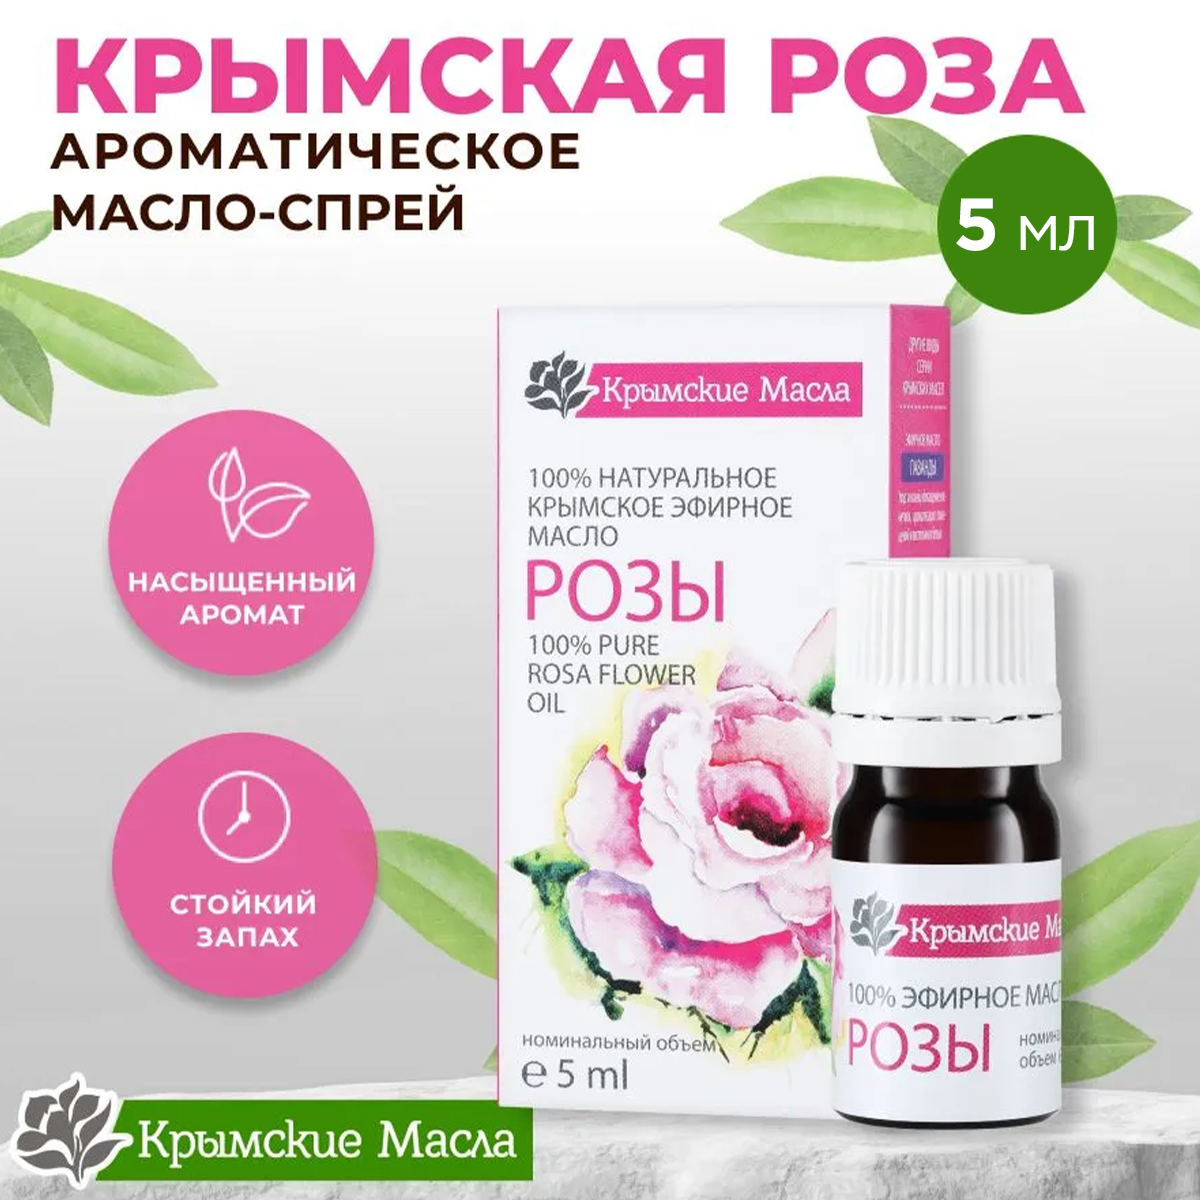 Эфирное масло Крымские масла успокаивающее, натуральное и лечебное, роза, 5 мл